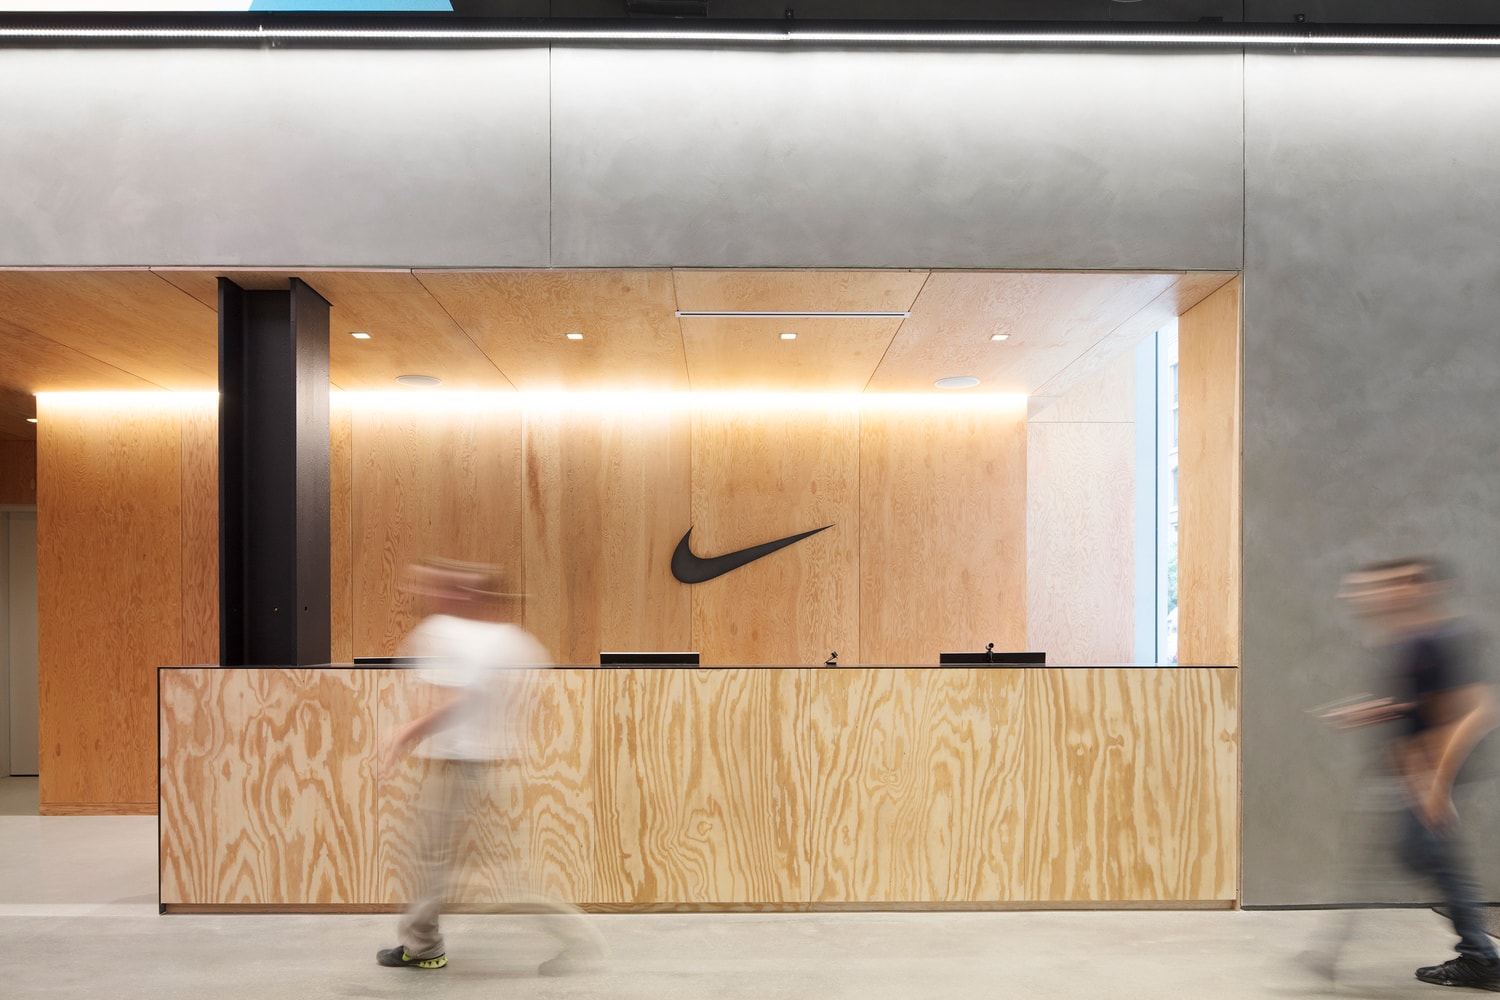 ArchDaily が優れた建築物を讃える Building of the Year Awards 2018 を発表 『Apple Store』の新店舗や〈Nike〉のNY本社に加え、日本人建築家の作品も 建築好きお待ちかね、『ArchDaily』が最も優れた建築物を讃える“Building of the Year Awards 2018”を発表した。今回は10万人以上の『ArchDaily』読者の投票により、巨大な住居から小さな教室まで、全15の建築物がノミネート。その中には香港国際空港やウェンブリー・スタジアムを手がけた「foster + partners」やオルドス博物館などでお馴染みの早野洋介擁する「MAD Architects」、あのZaha Hadid（ザハ・ハディッド）を輩出した名門「OMA」などが順当に名を連ねる。その他では『HYPEBEAST』でもご紹介した『Apple Store』のシカゴ店や、中村拓志主宰のNAP建築設計事務所が広島市の中心部に建てた個人住宅『Optical Glass House』も選出。  以下ではノミネート作品の一部をご紹介しているが、全15の建築物一覧は、こちらからご確認を。  あわせて、巨匠建築家・隈研吾が設計したスコットランド初のデザイン美術館『V&A Dundee』の建築もチェックしてみては？